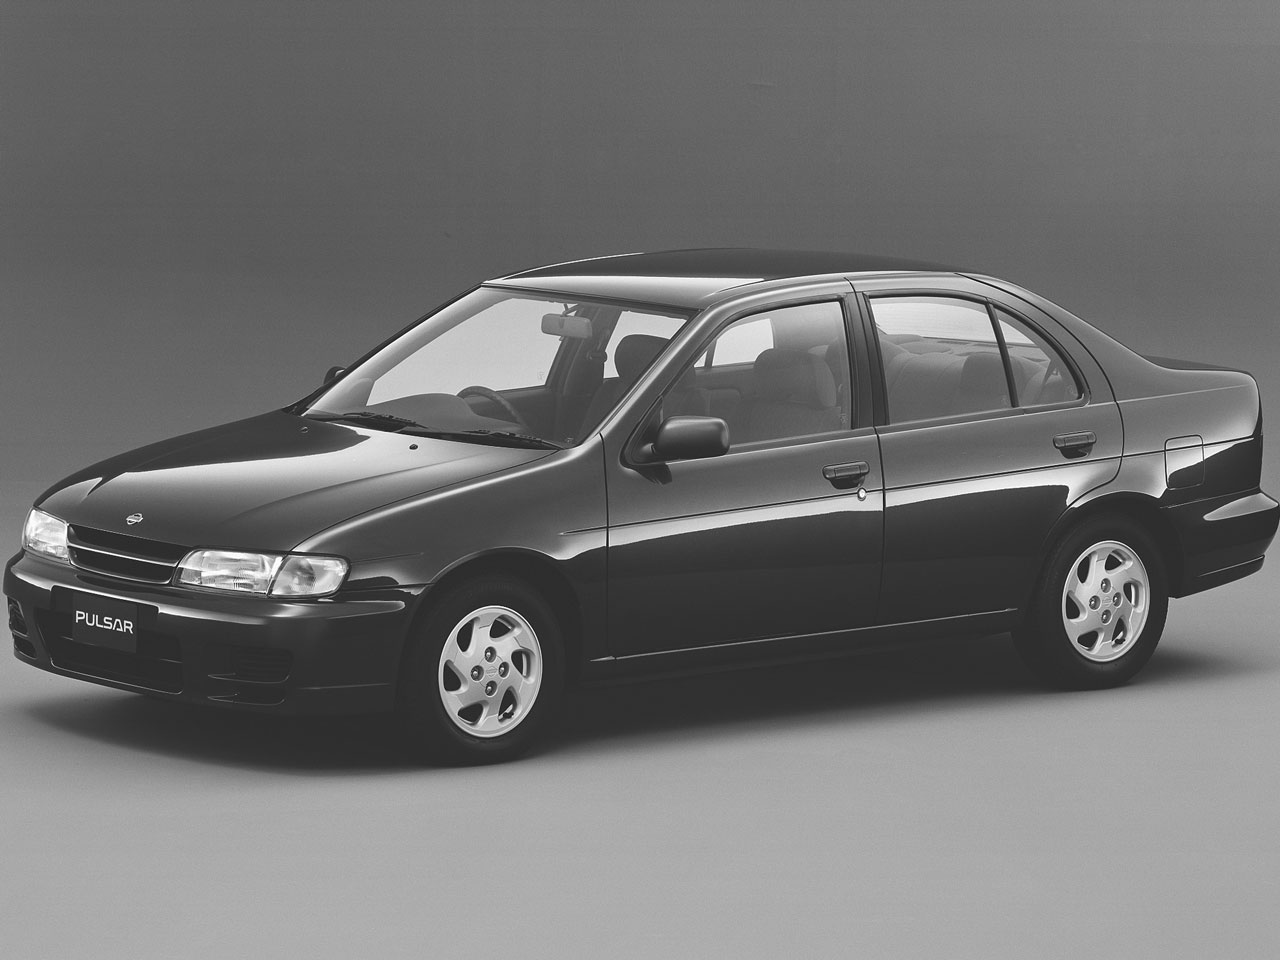 パルサー セダン 1995年モデル の製品画像